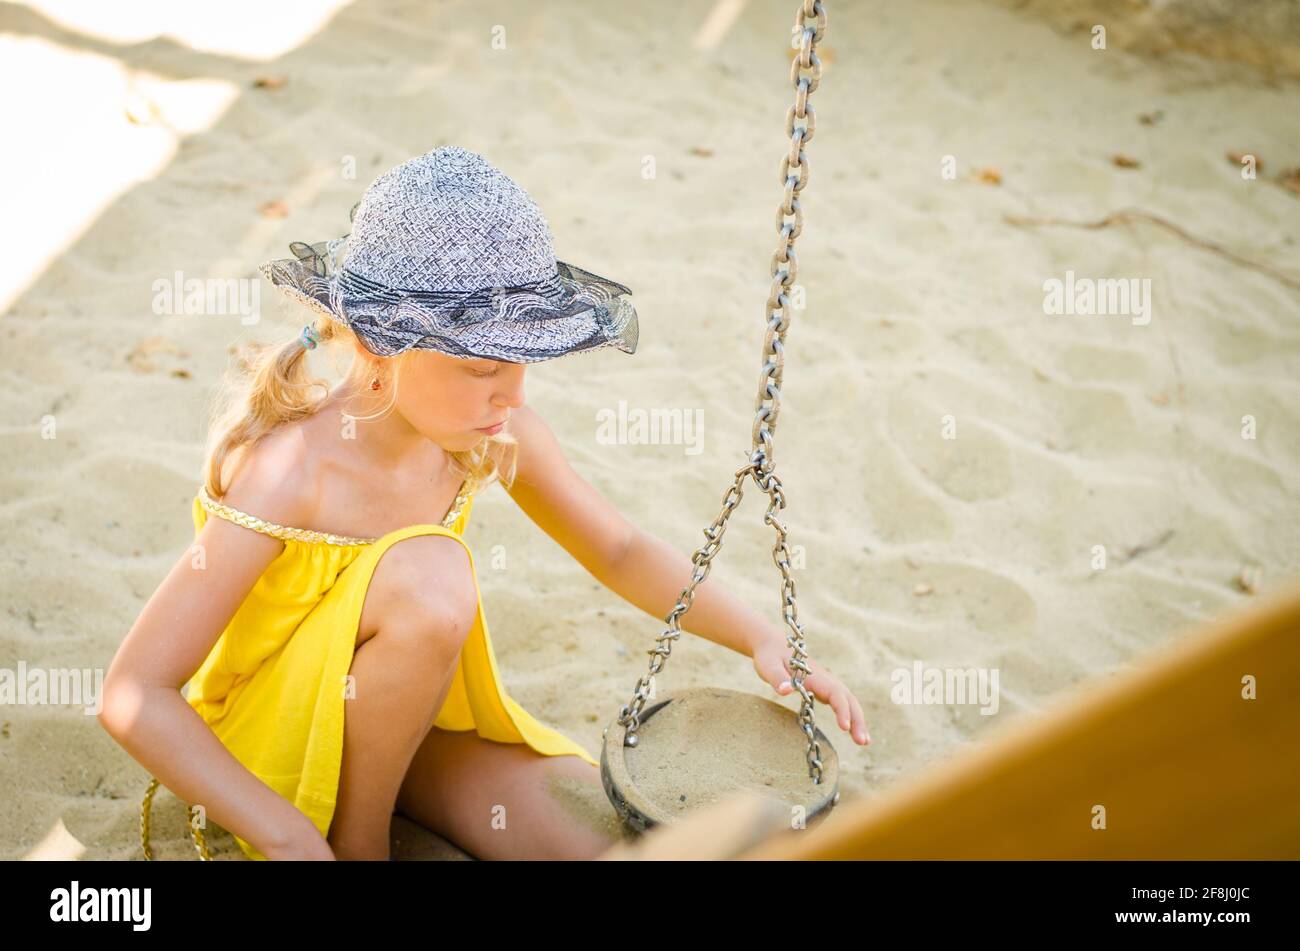 petite fille blonde jouant dans un bac à sable sur l'aire de jeux Banque D'Images